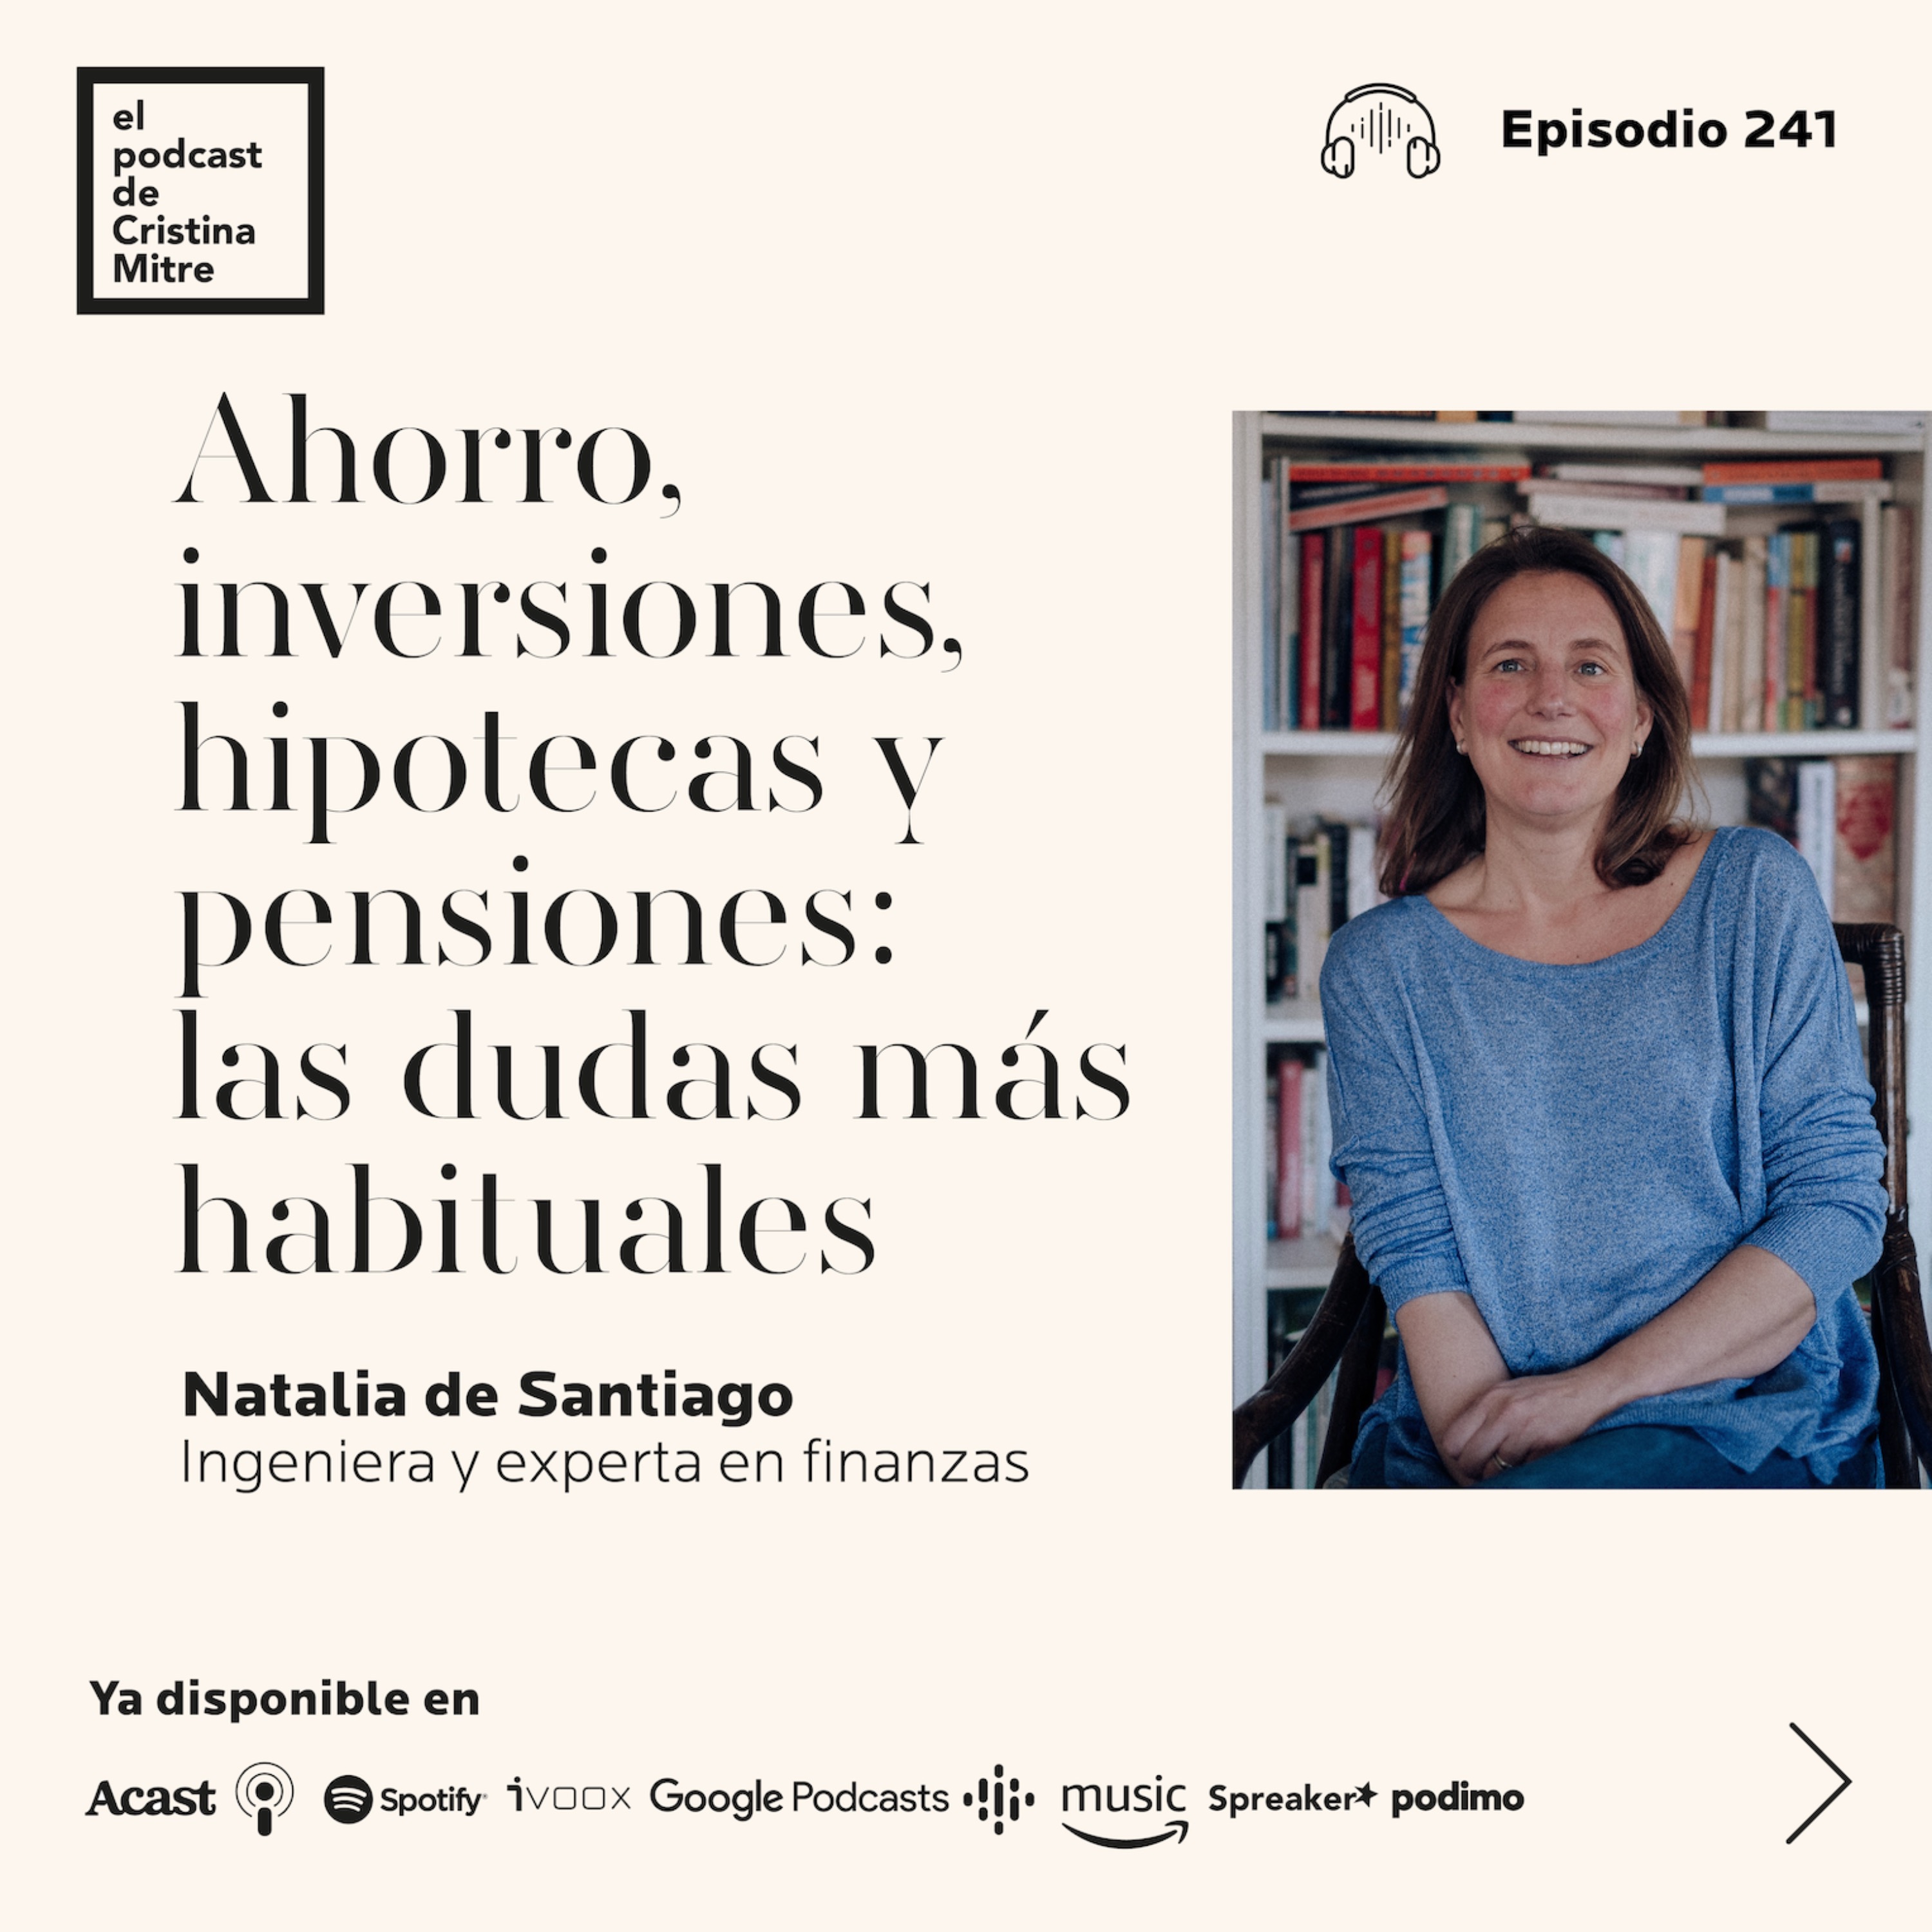 Ahorro, inversiones, hipotecas y pensiones: las dudas más habituales, con Natalia de Santiago. Episodio 241